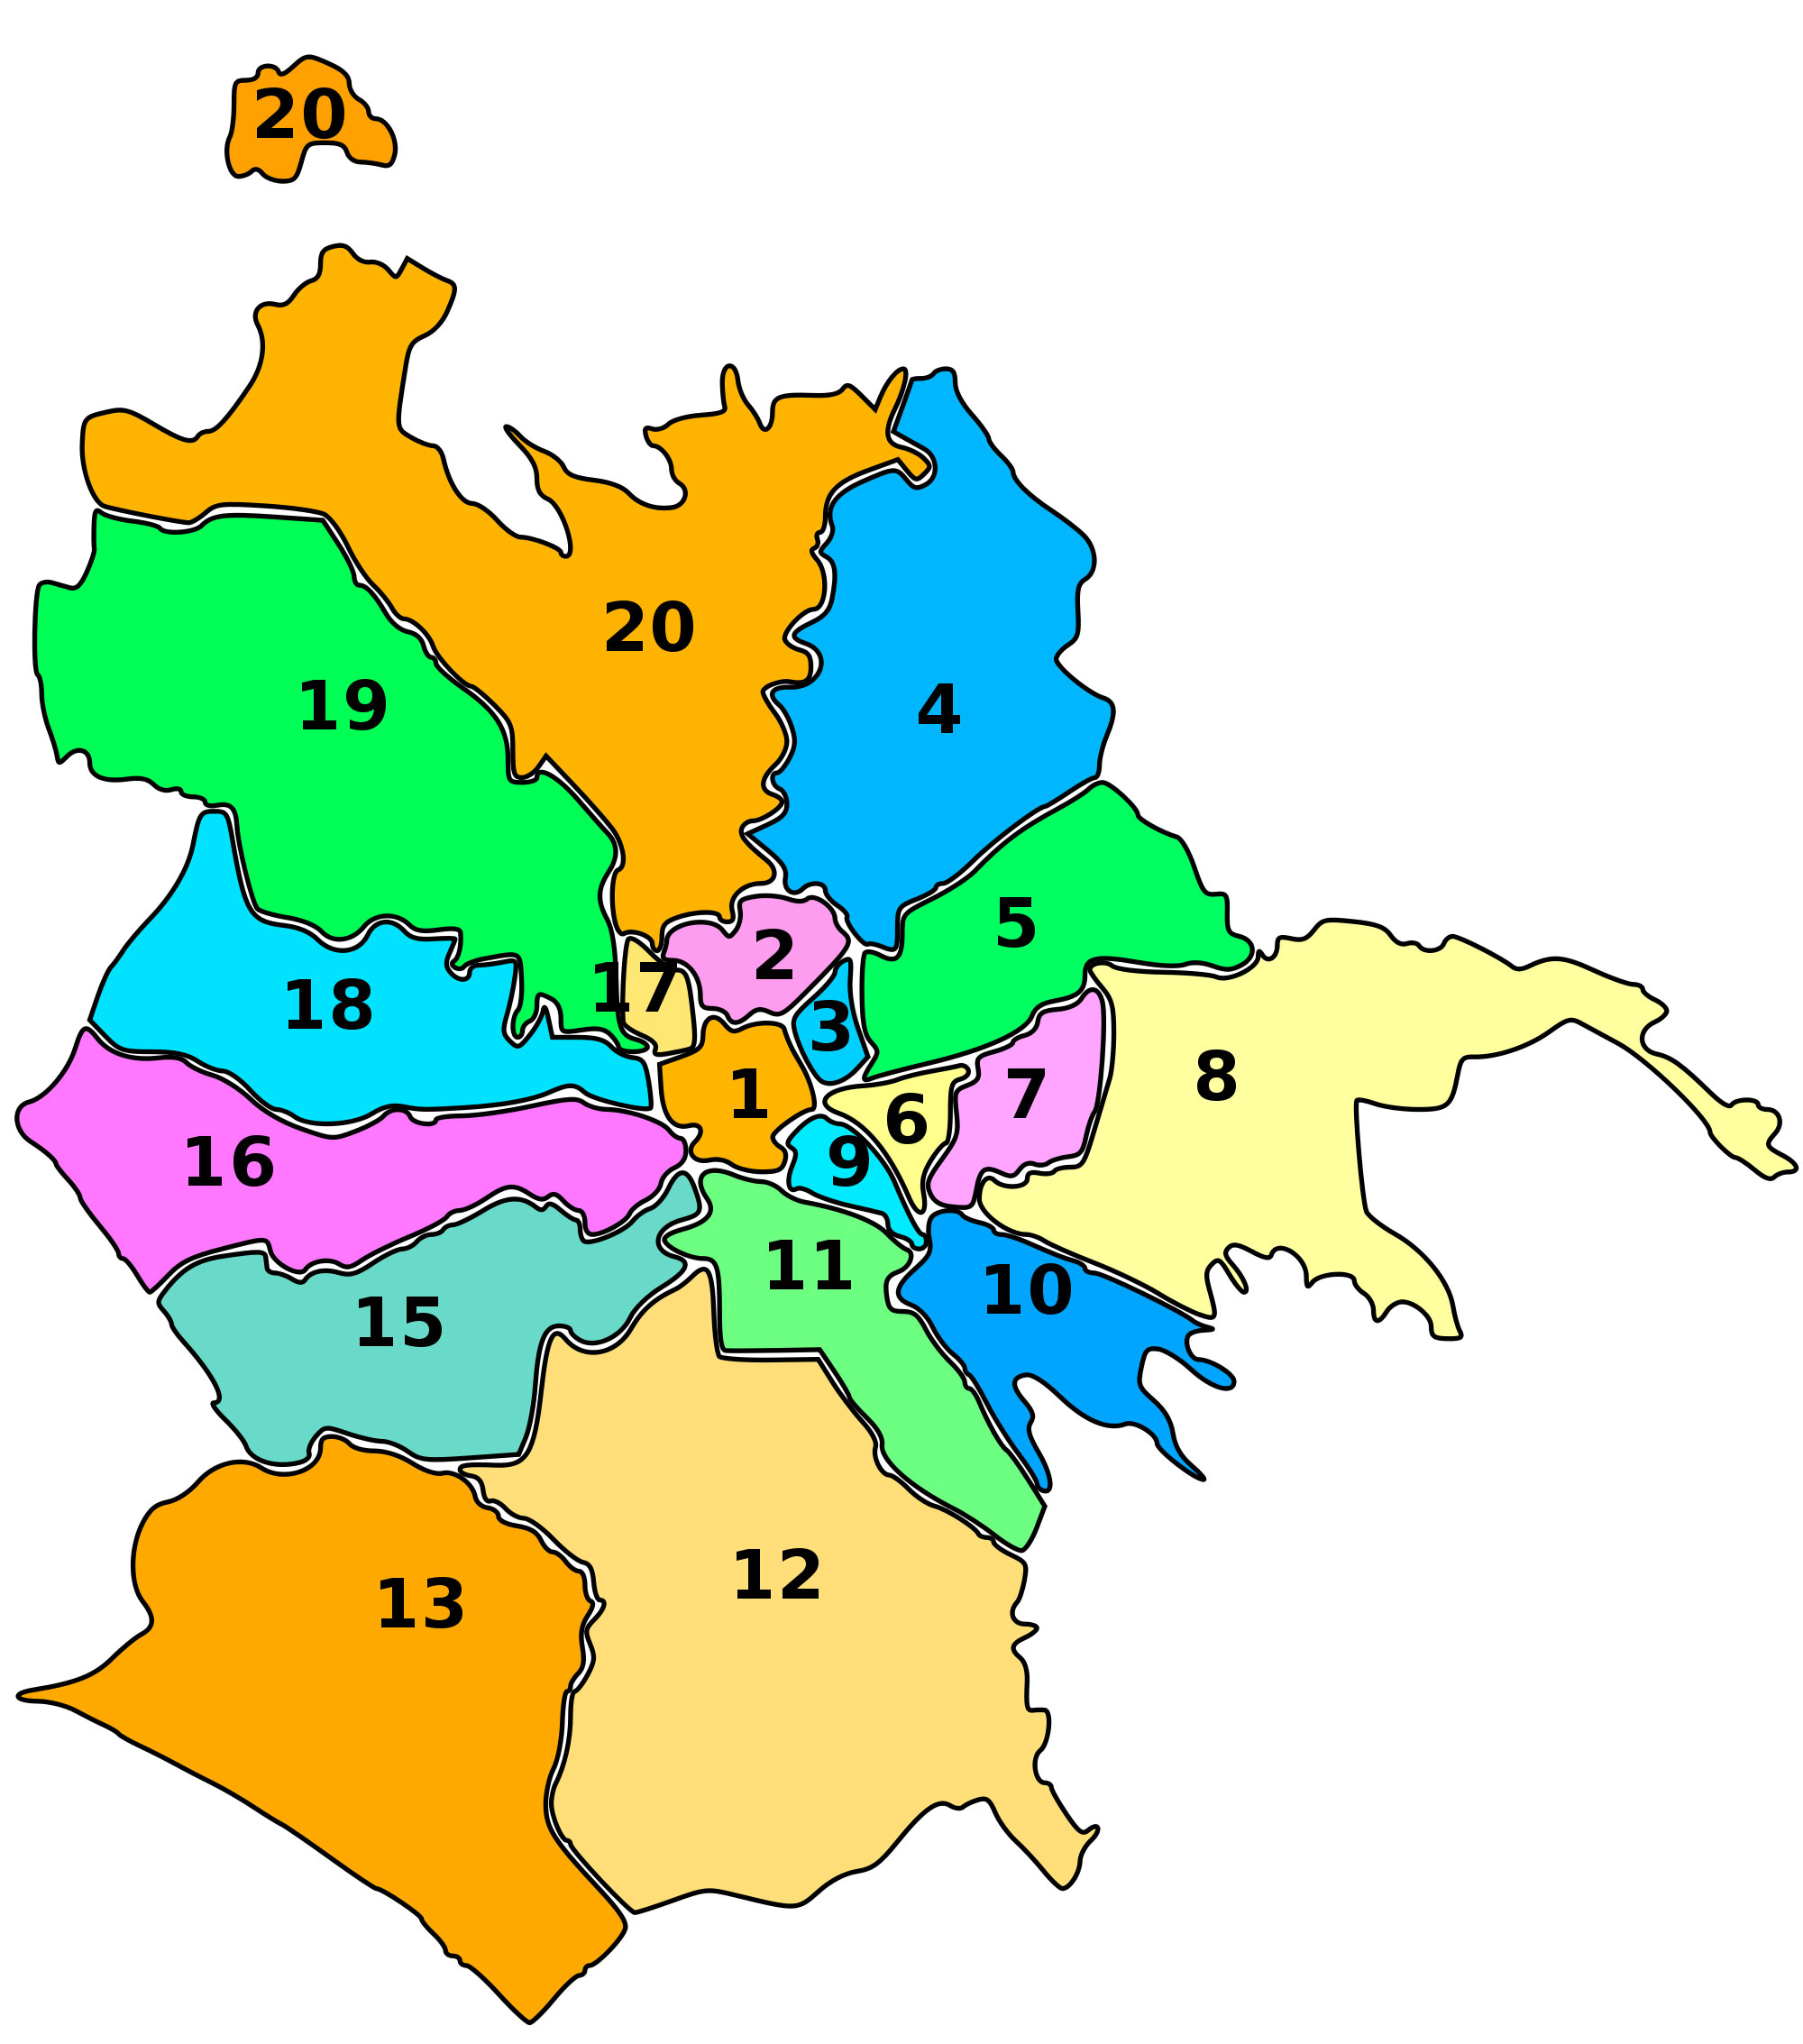 Mapa dos 19 distritos (municipi) e bairros de Roma